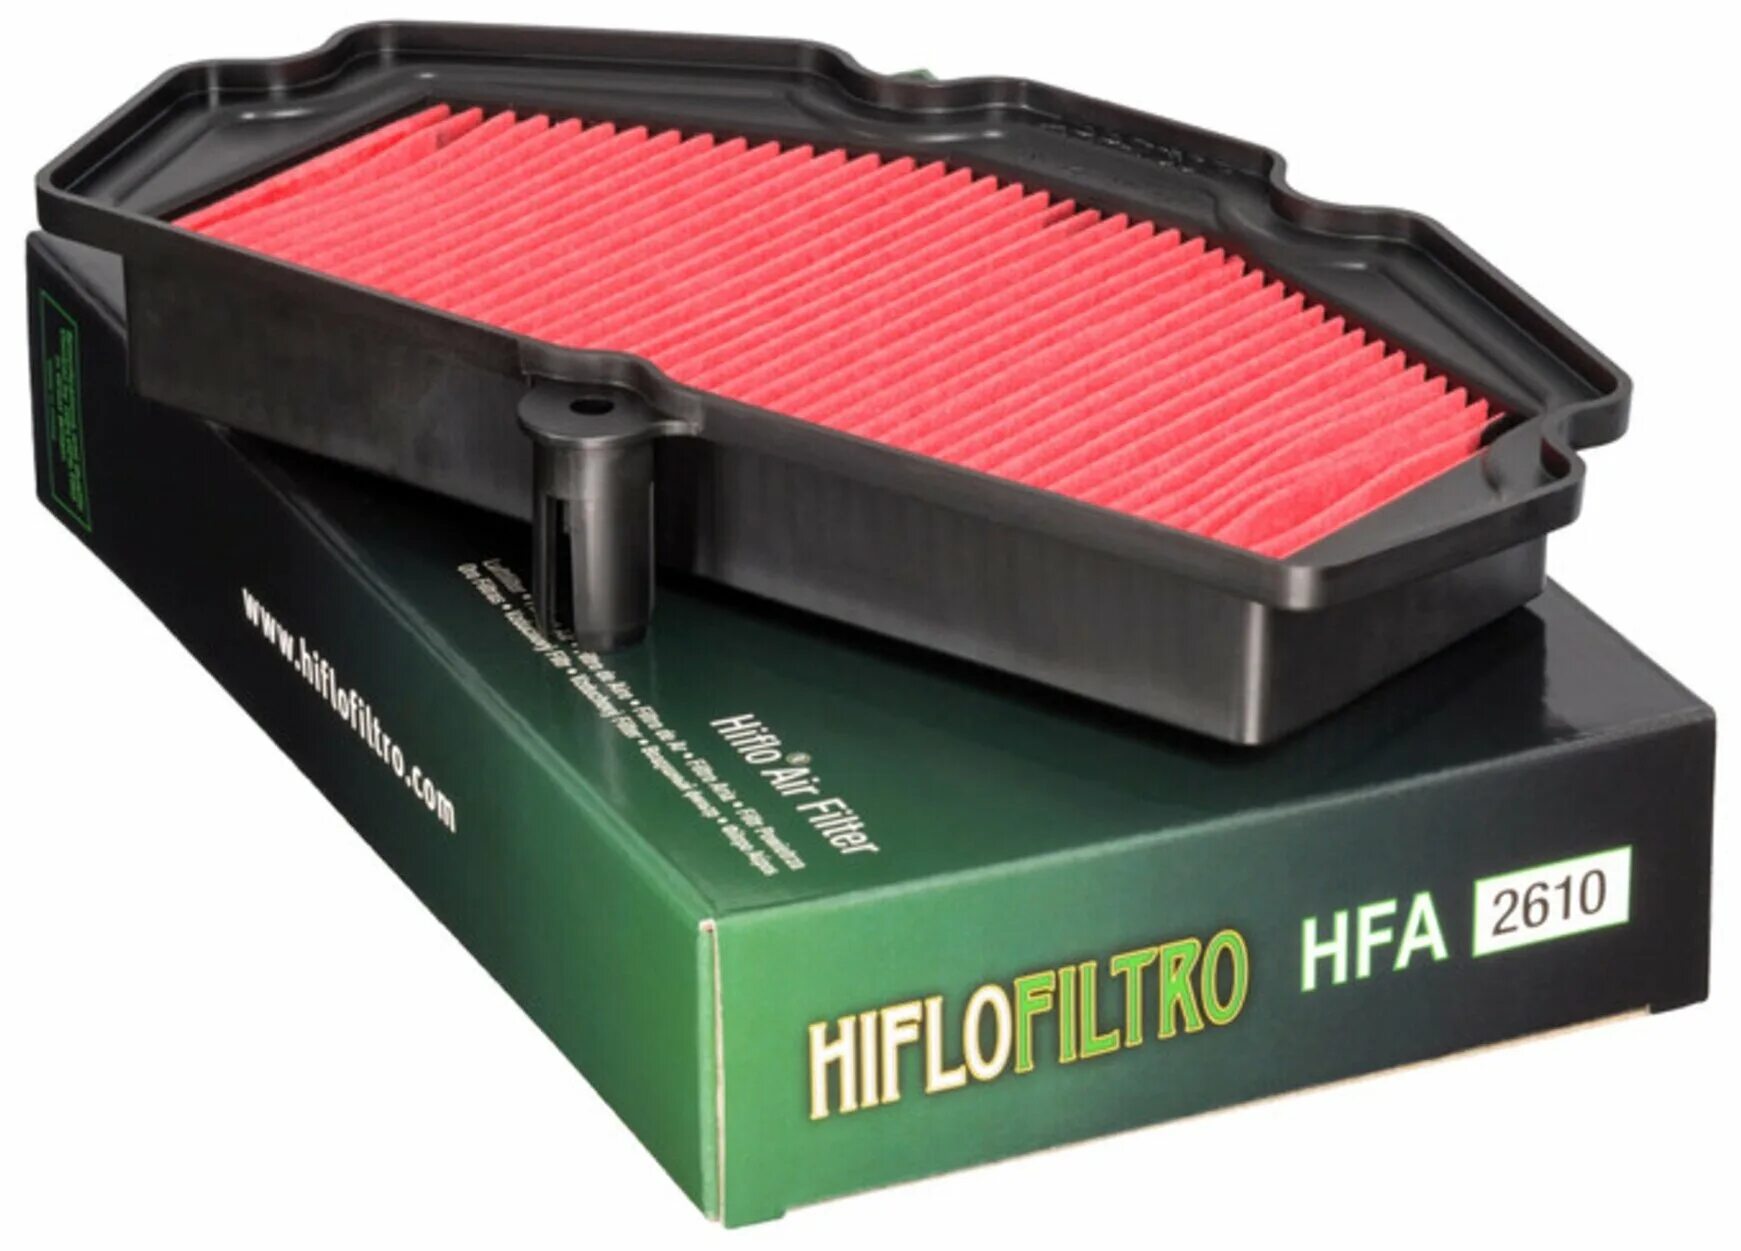 Фильтр воздушный HIFLO hff4012. Фильтр воздушный hfa2610. Воздушный фильтр Kawasaki 11013. Воздушный фильтр HIFLO Kawasaki 2607. Воздушные фильтры барнаул